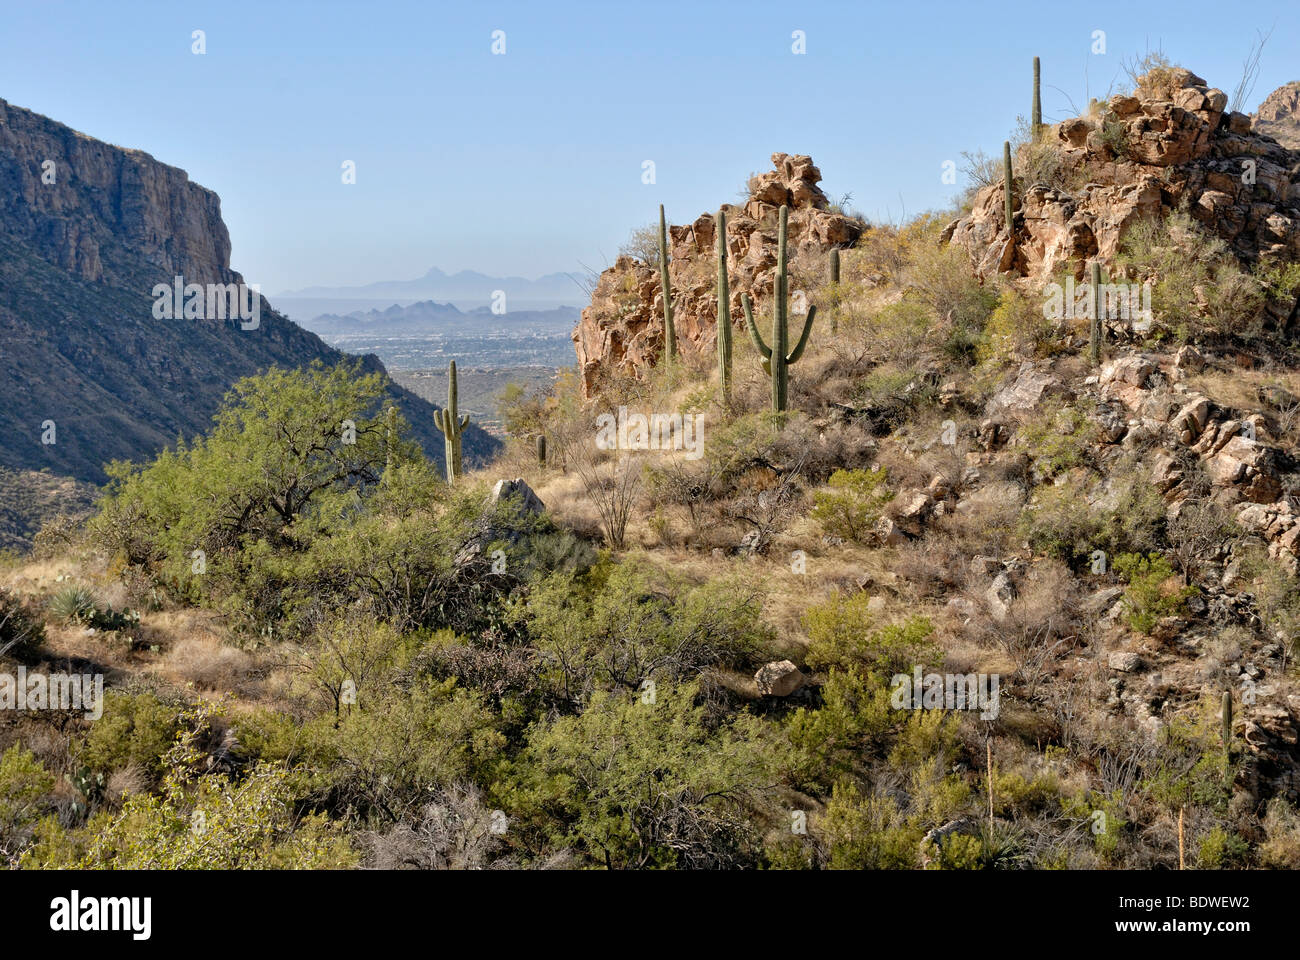 Vista desde la ruta de senderismo de gran altitud en Sabino Canyon en partes de la ciudad de Tucson, Arizona, EE.UU. Foto de stock